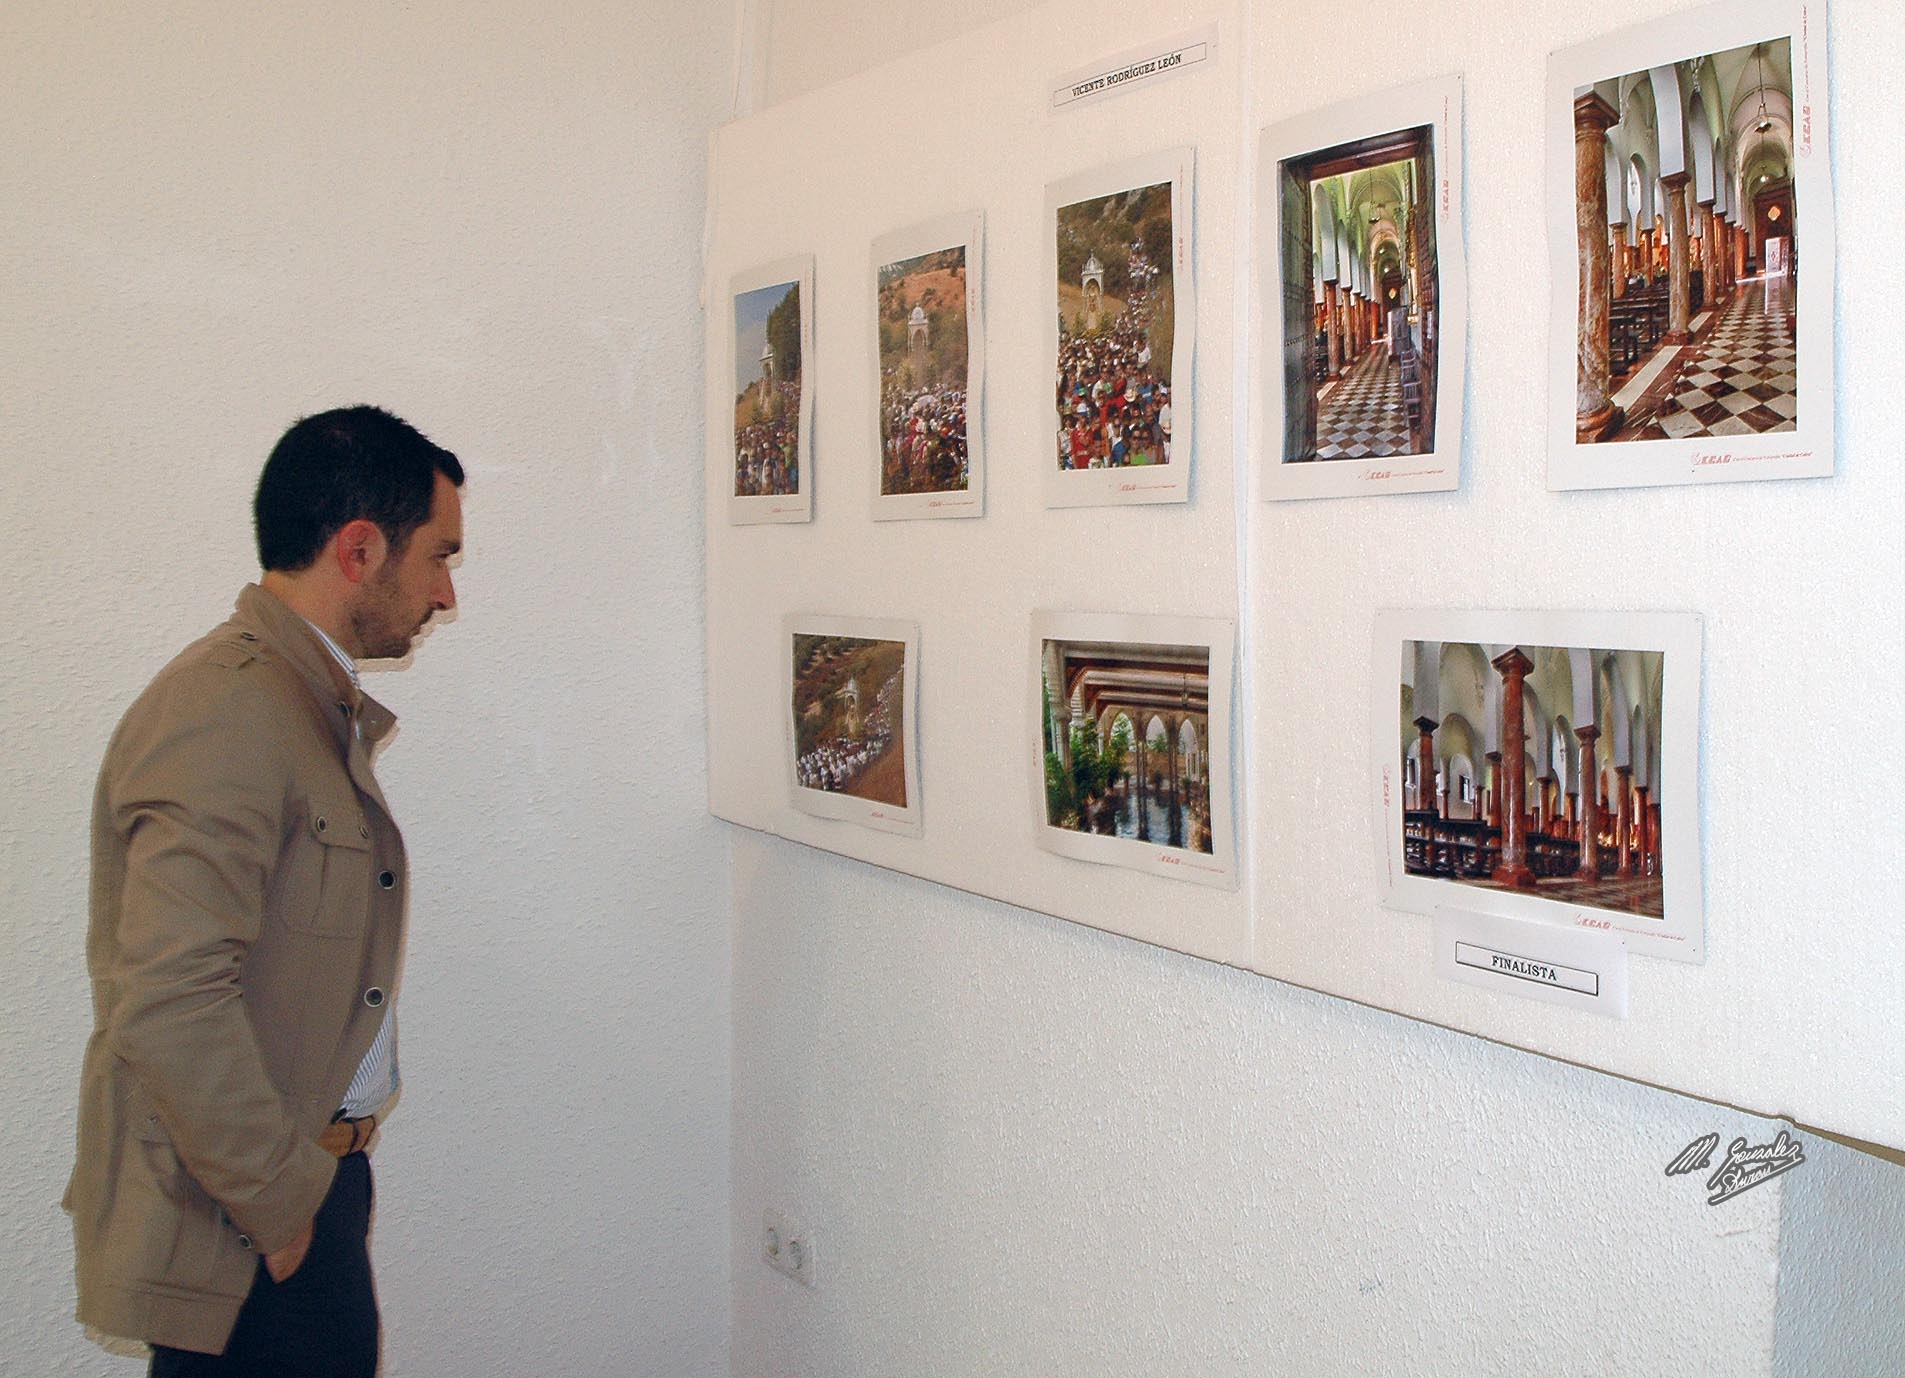 XV concurso de fotografia ciudad de Cabra, edición 2015